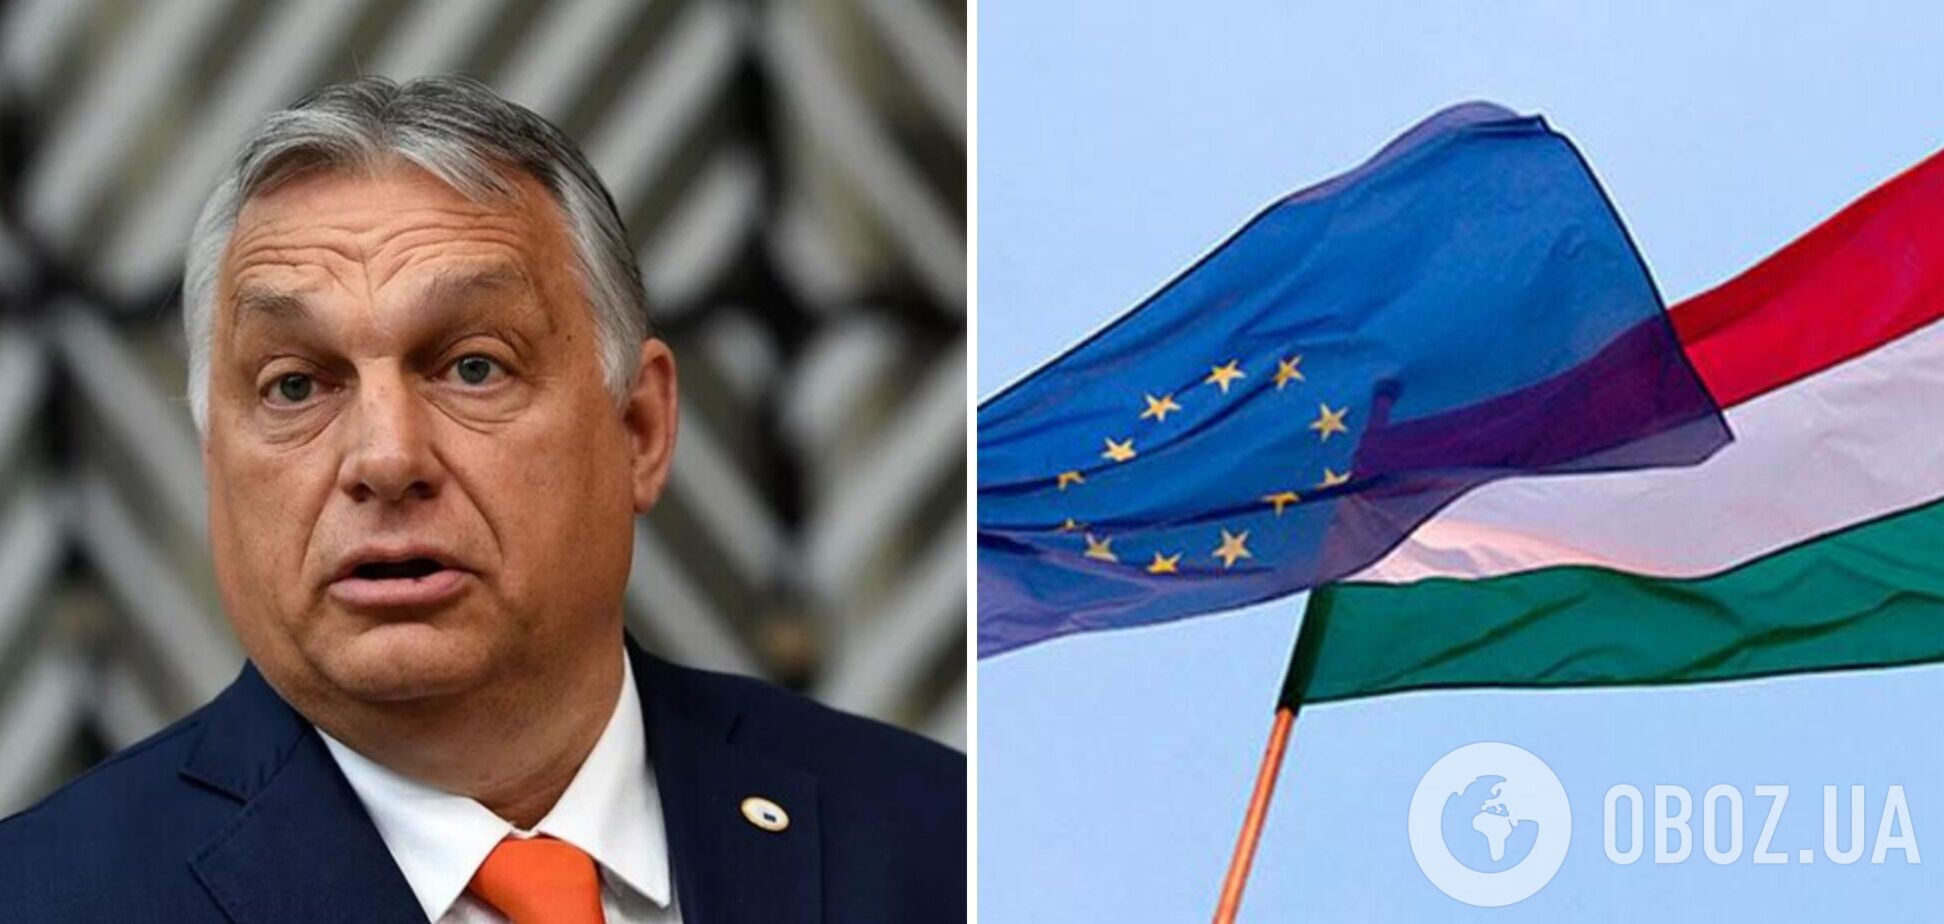 'Історія повторюється': Орбан порівняв членство Угорщини в ЄС із радянською окупацією